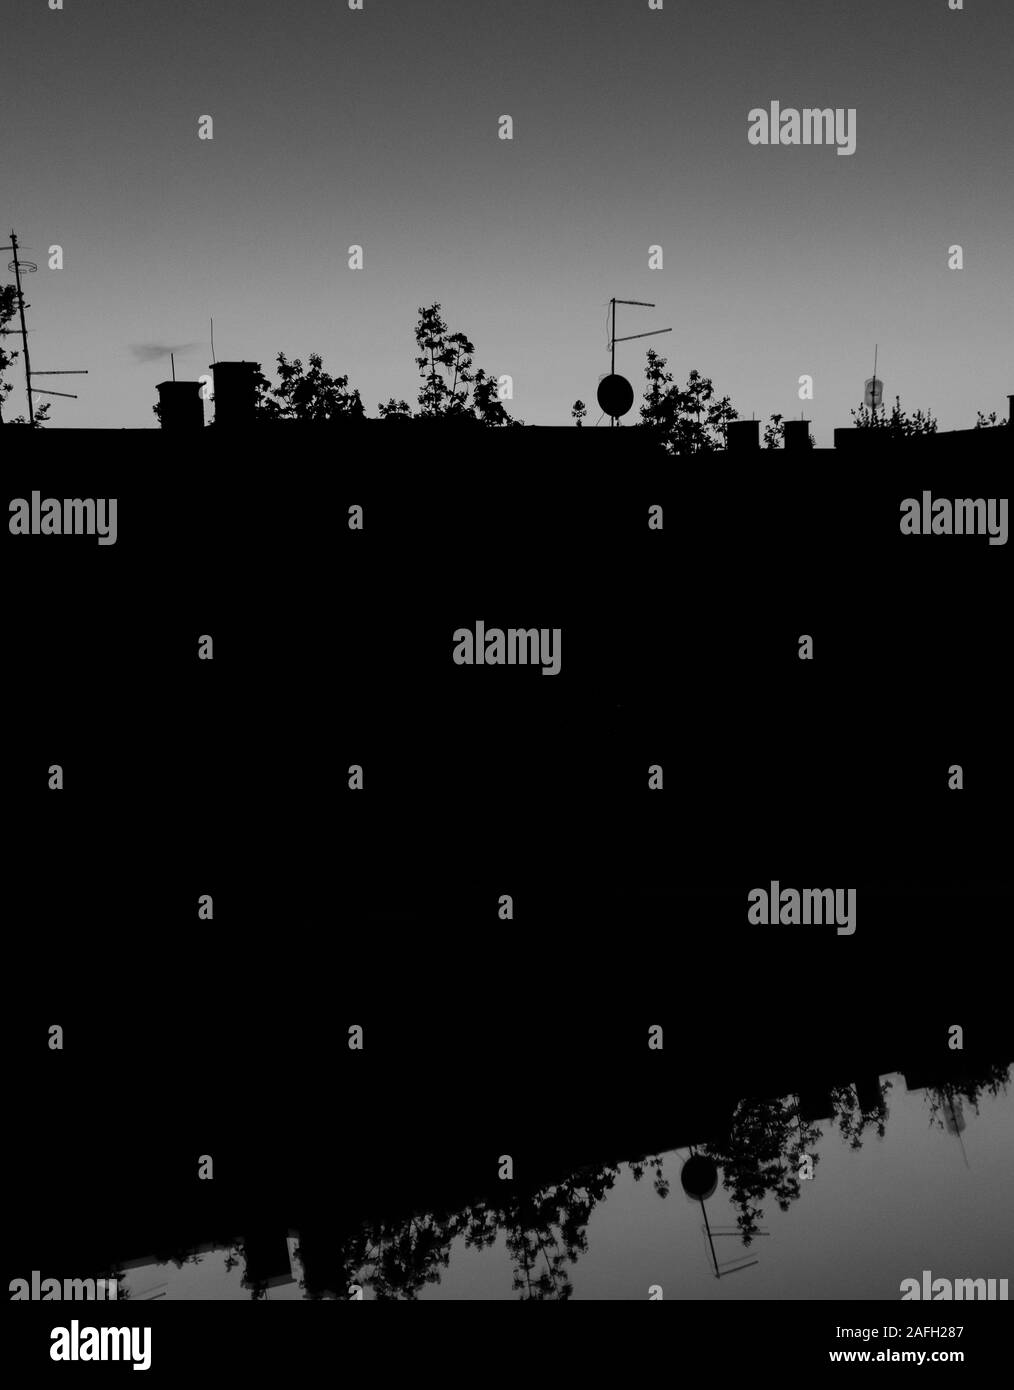 Immagine in scala di grigi di un lago con il riflesso dell'ambiente circostante fili e alberi Foto Stock